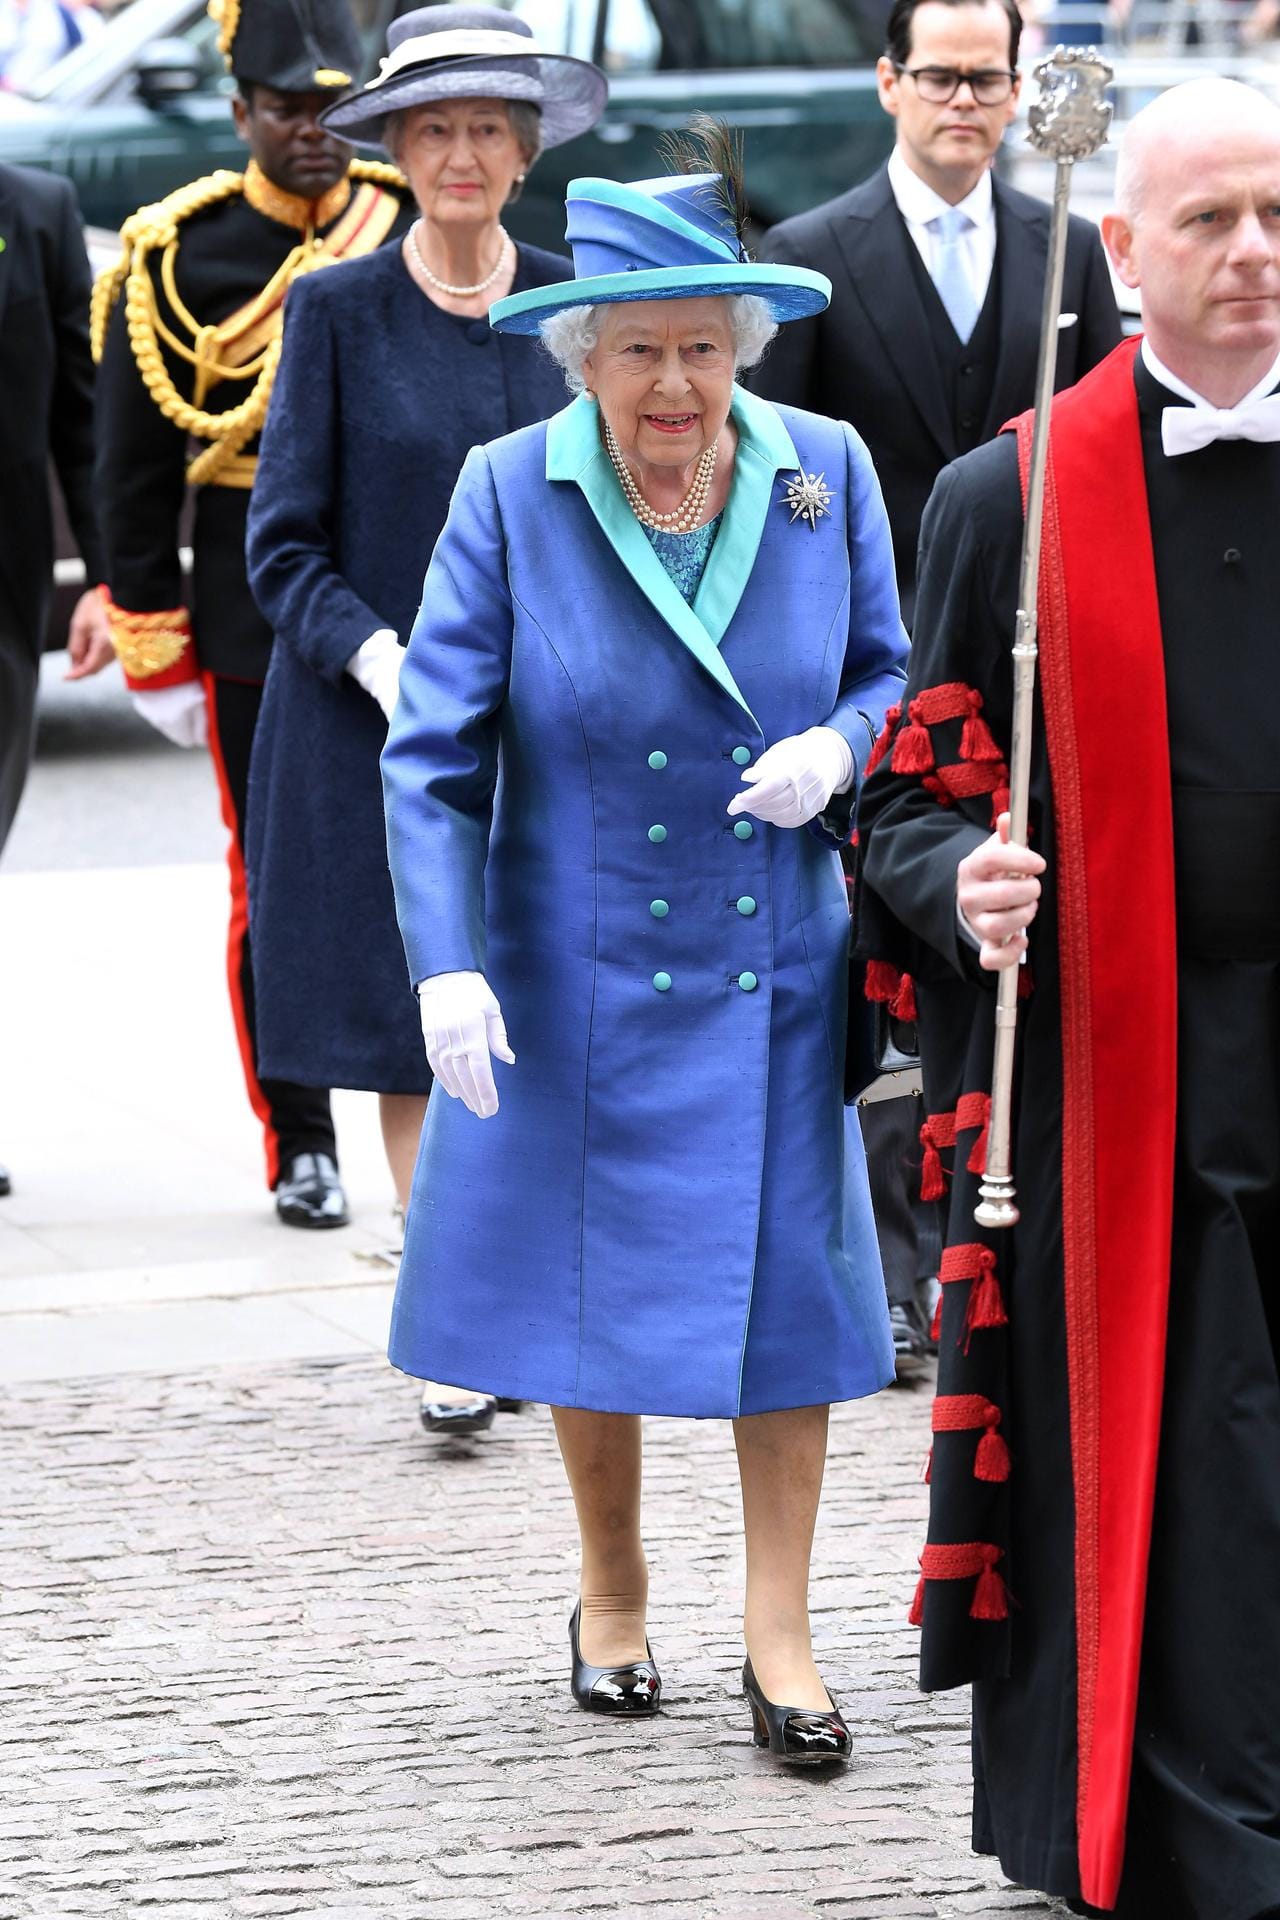 Farbenfroh wie immer: Queen Elizabeth setzte auf einen royalblauen Mantel mit passendem Hut.